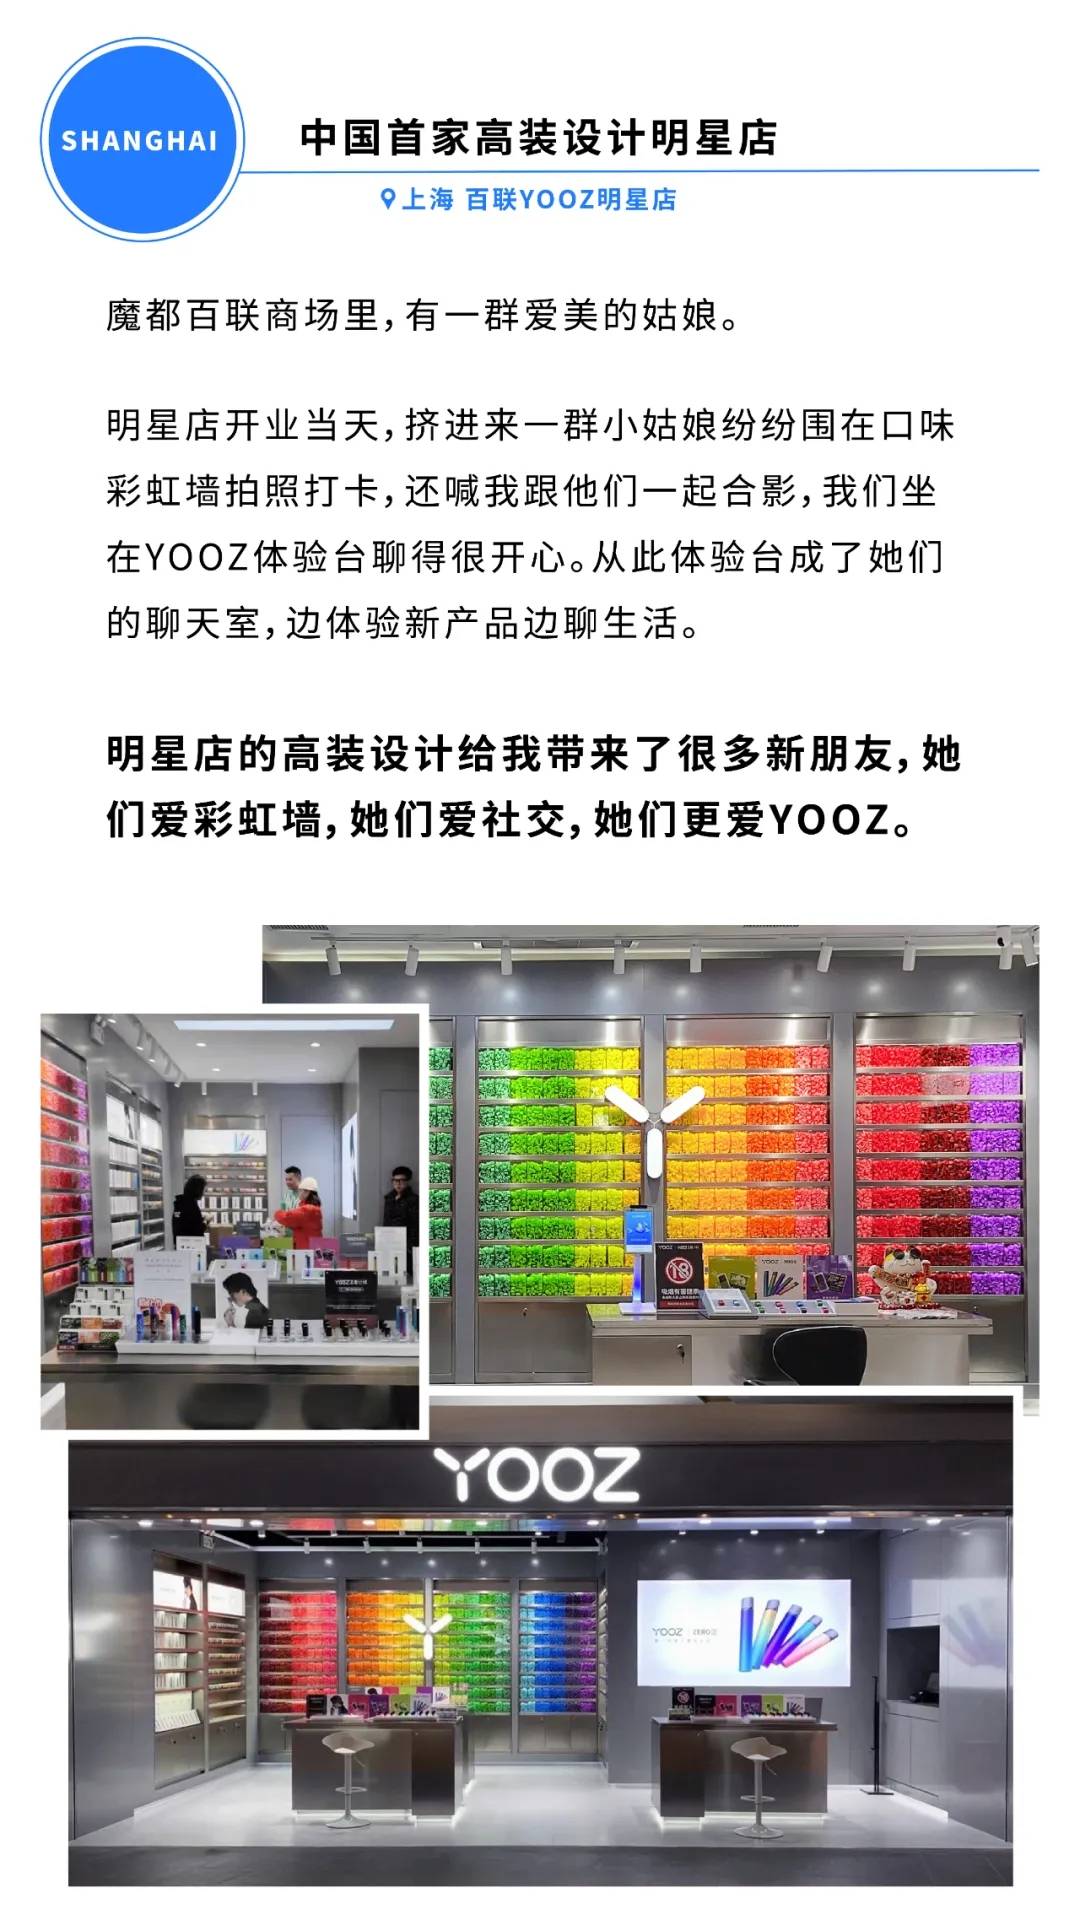 YOOZ国内专卖店已破4000家